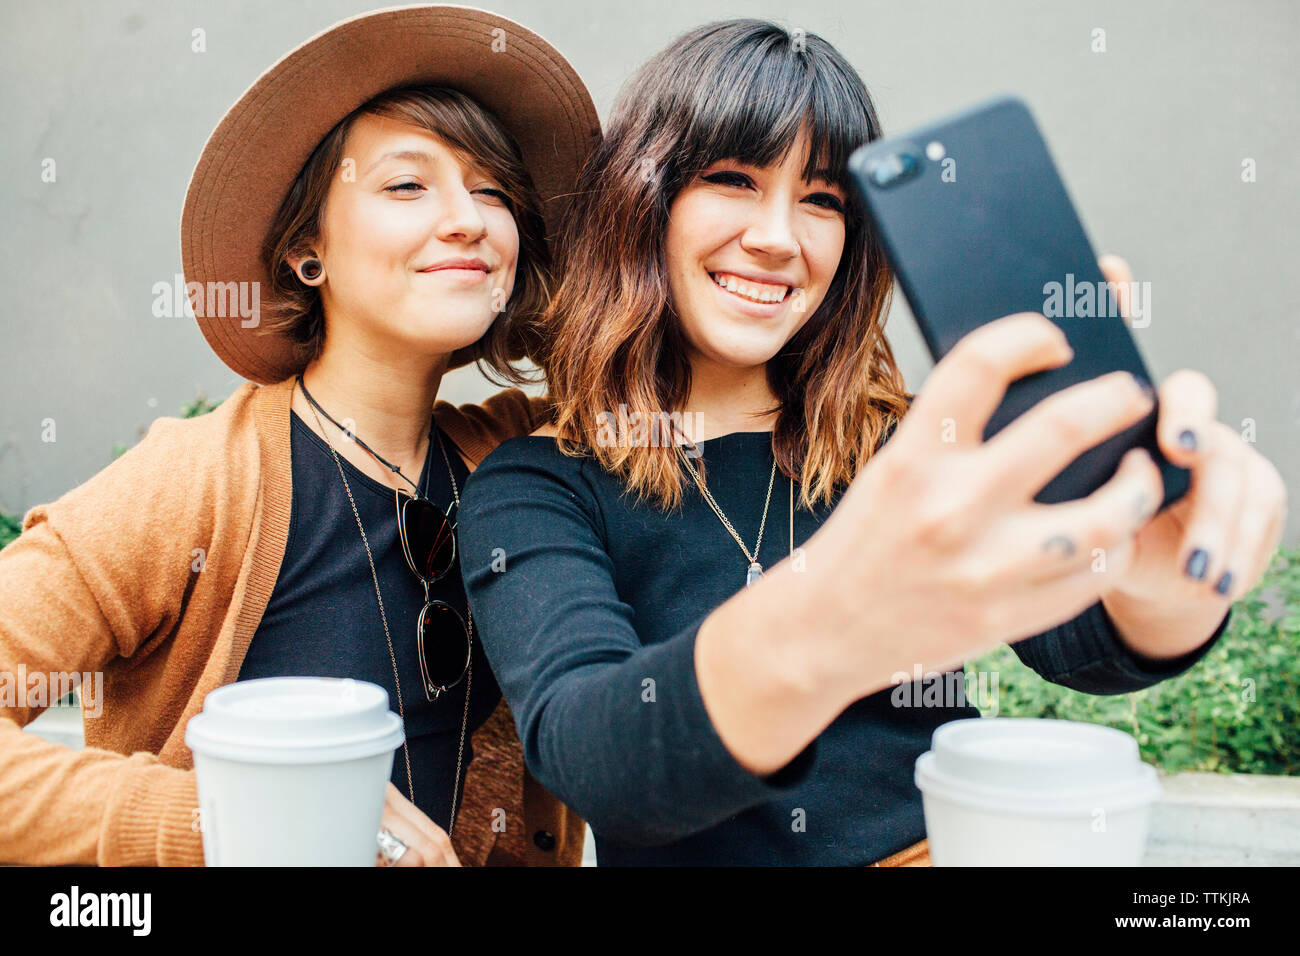 Lächelnd weibliche Freunde unter selfie bei Tisch sitzen Stockfoto